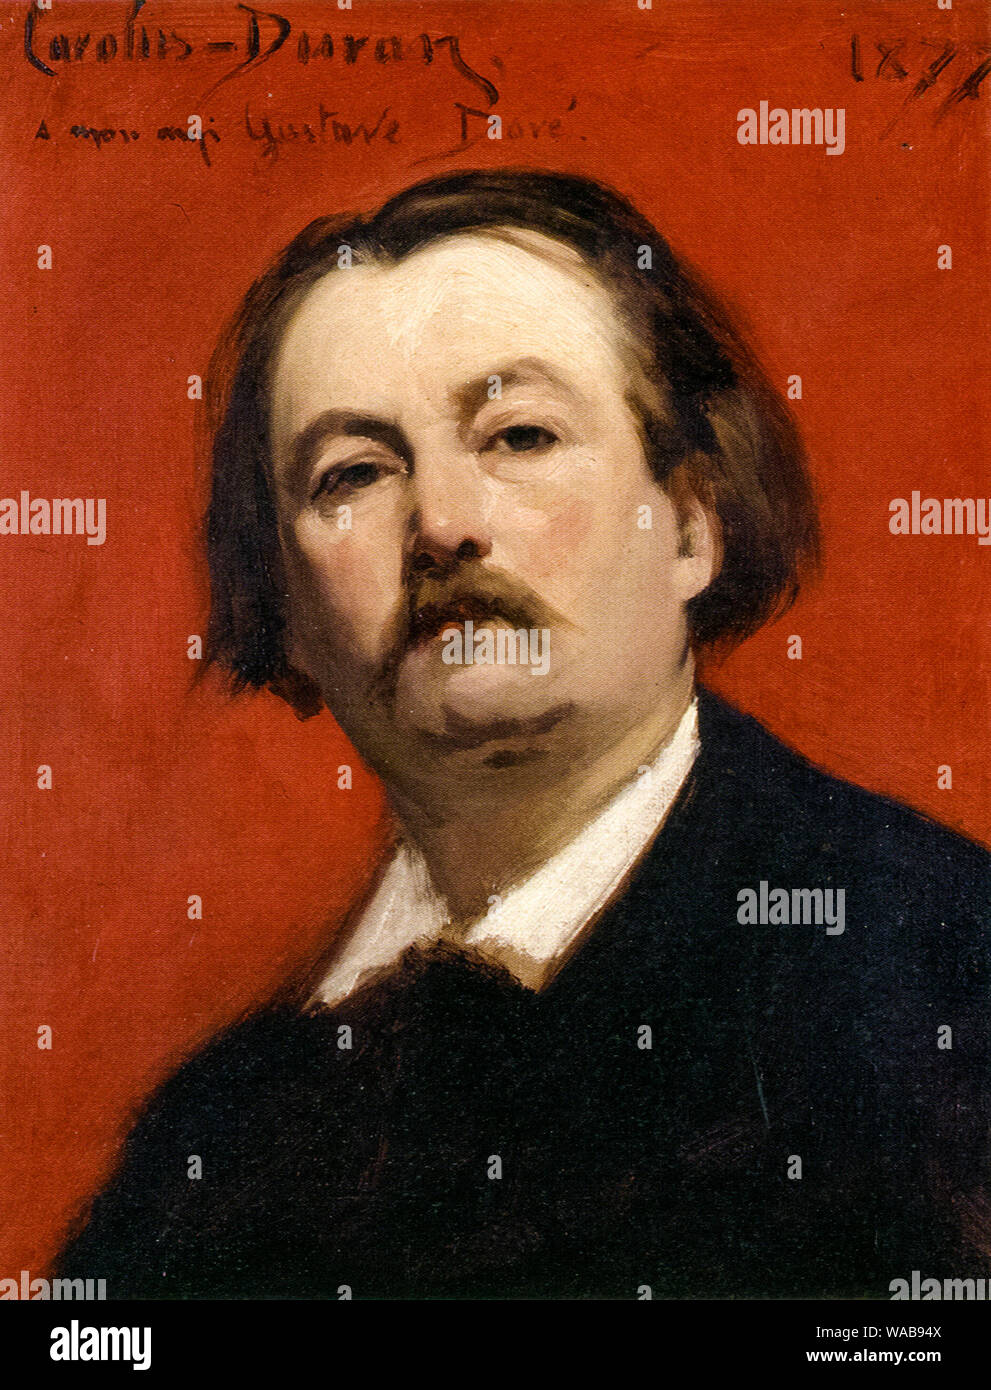 Carolus-Duran : Portrait de Gustave doré, 1832-1883, peinture à l'huile sur toile, 1877 Banque D'Images